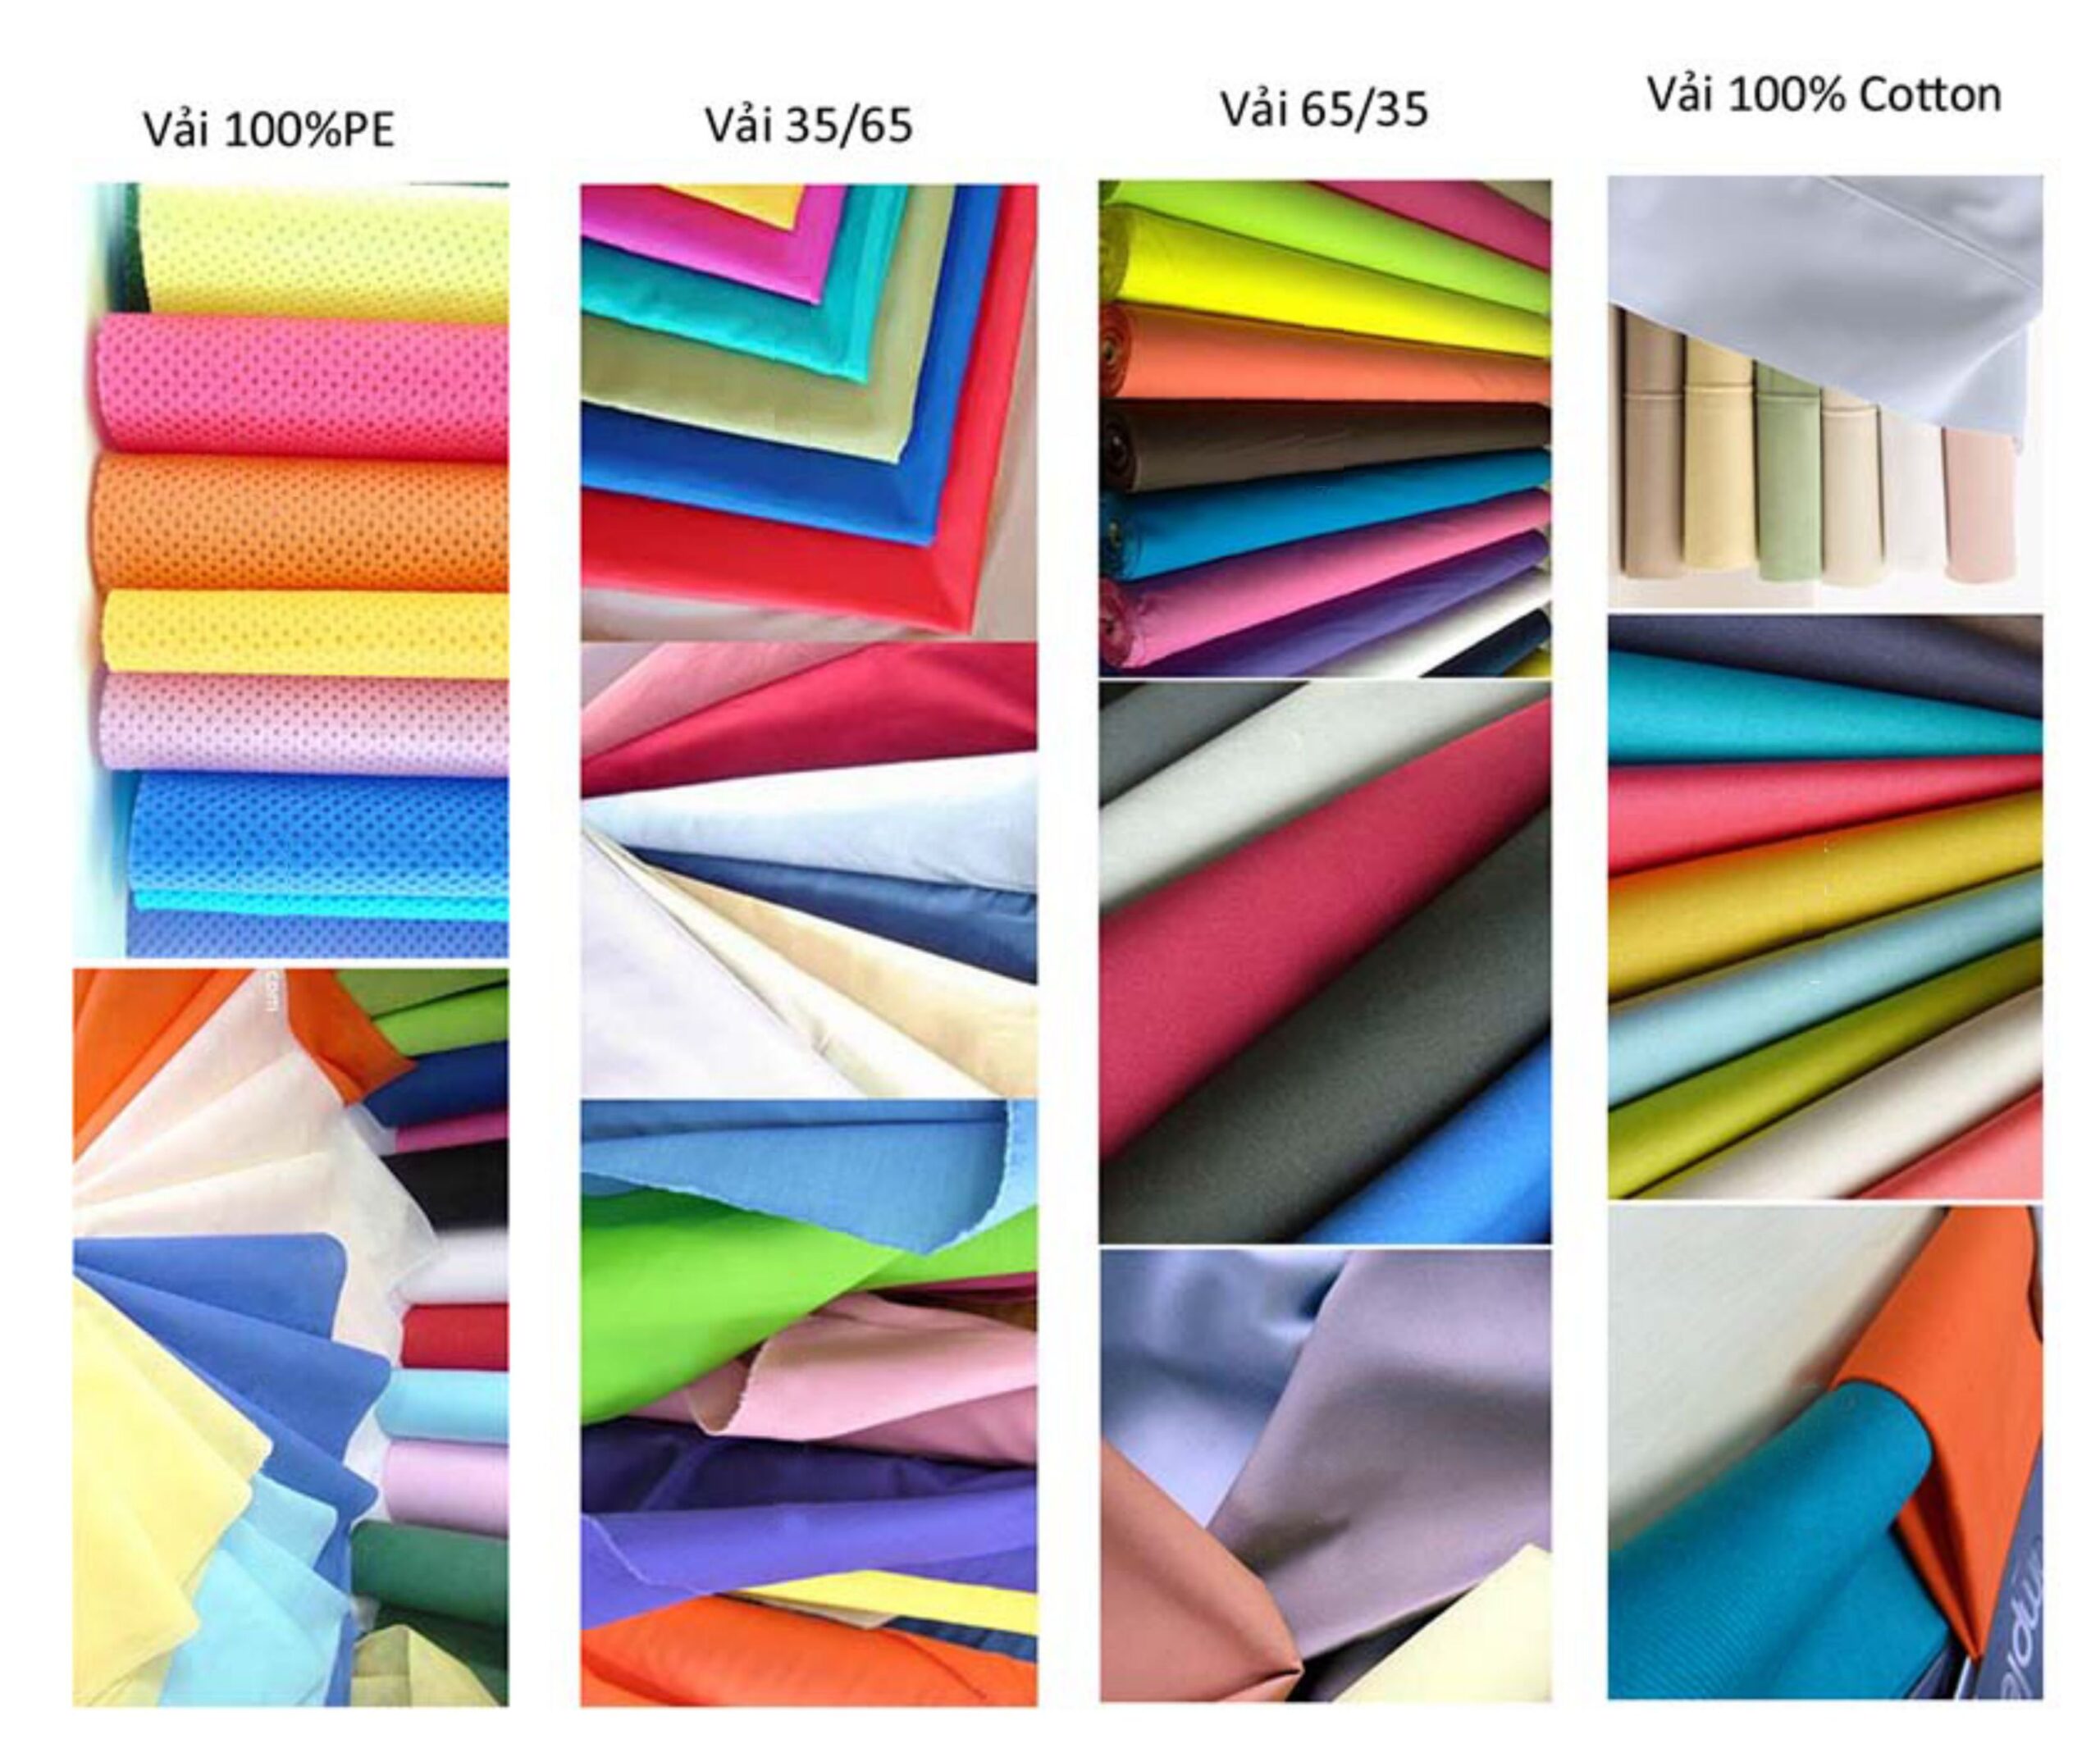 Tìm hiểu vải cotton, nguồn gốc ra đời, các loại vải cotton phổ biến, ứng dụng của loại vải này (ảnh: Internet)